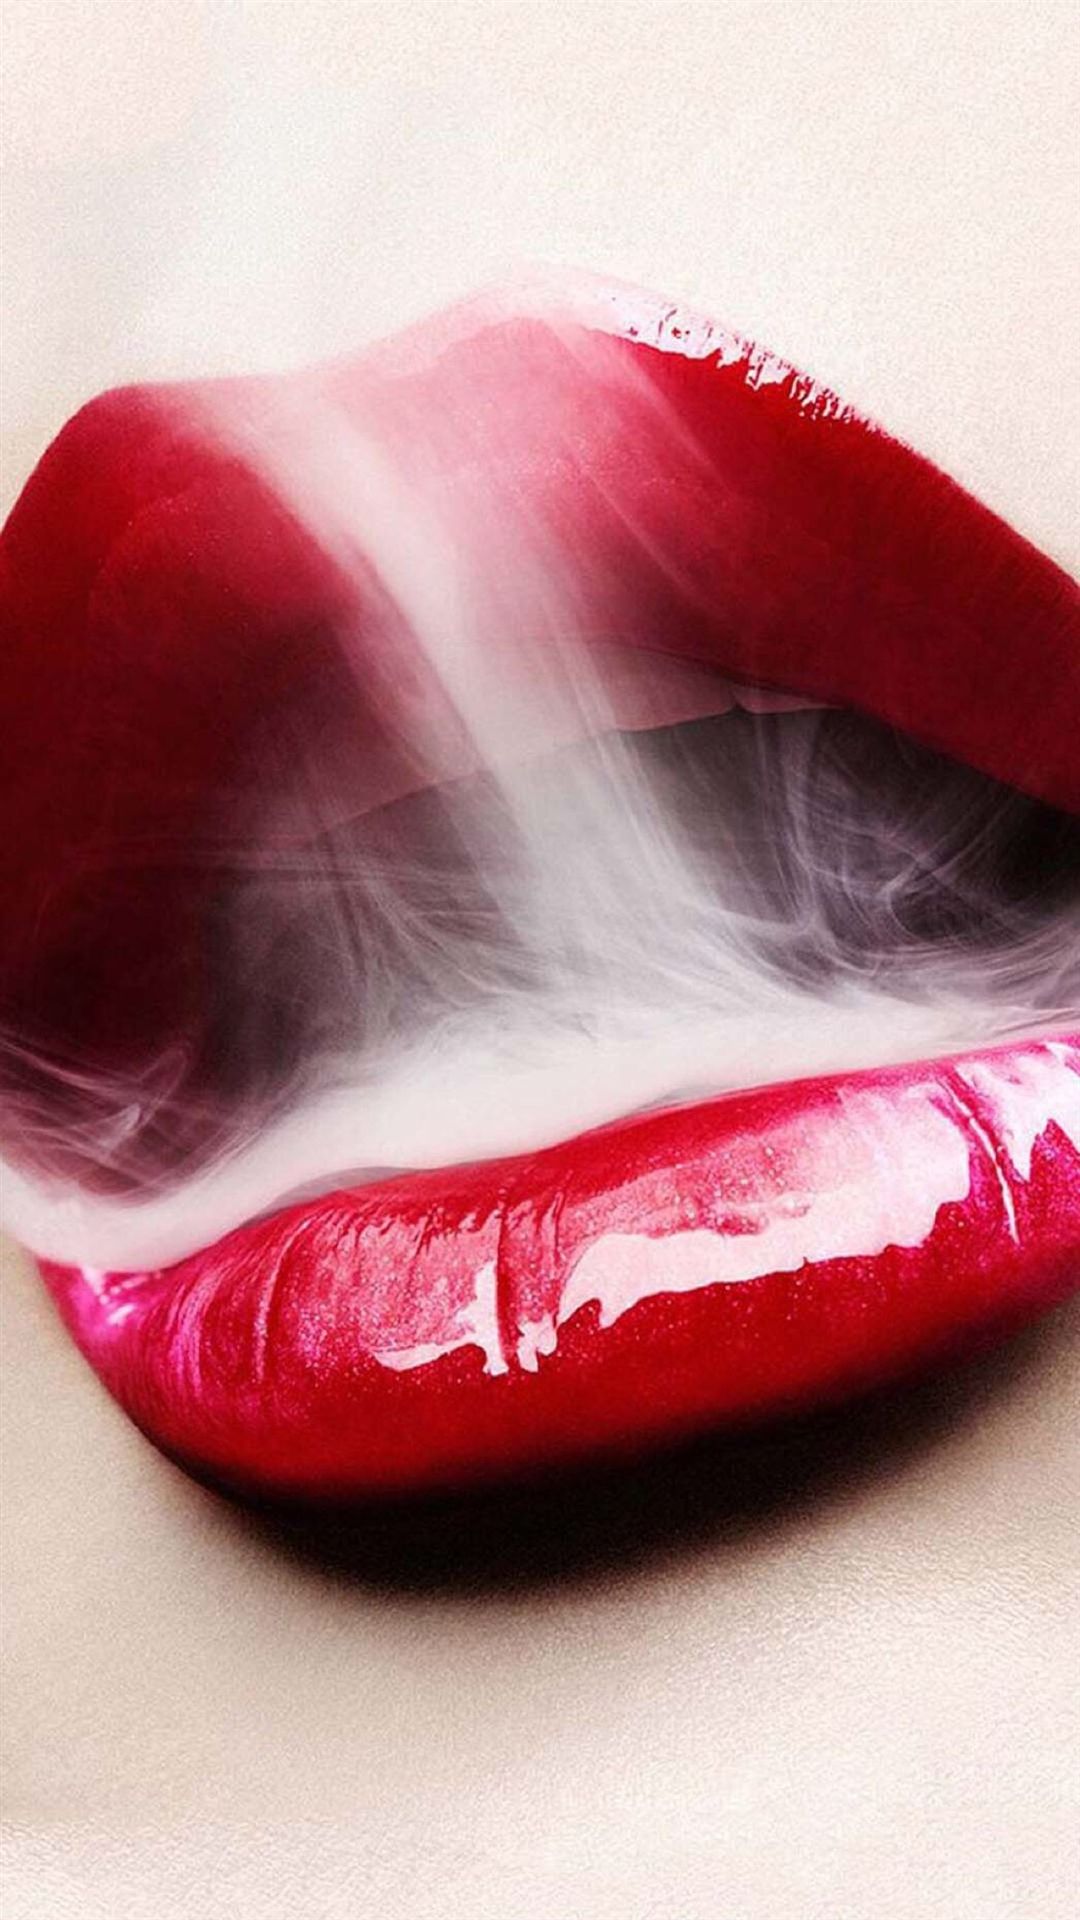 fumatori wallpaper iphone 5,labbro,rosso,rosa,bocca,rossetto